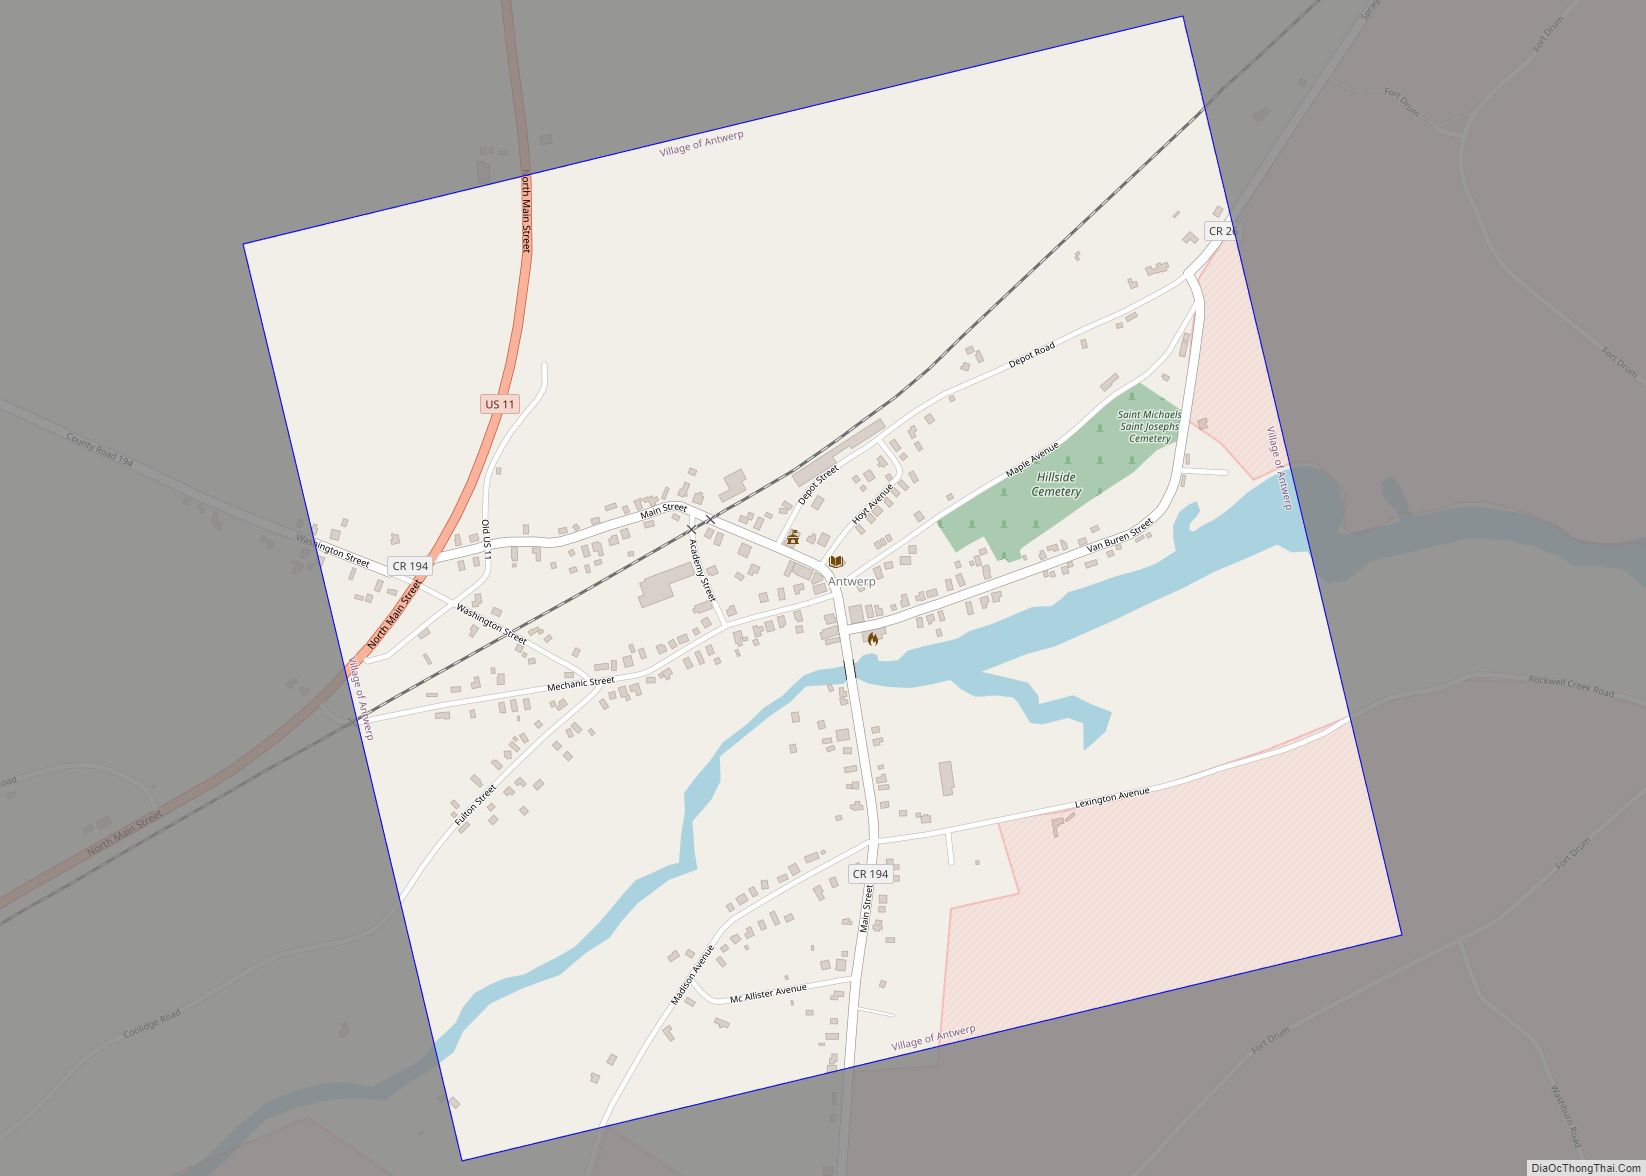 Map of Antwerp village